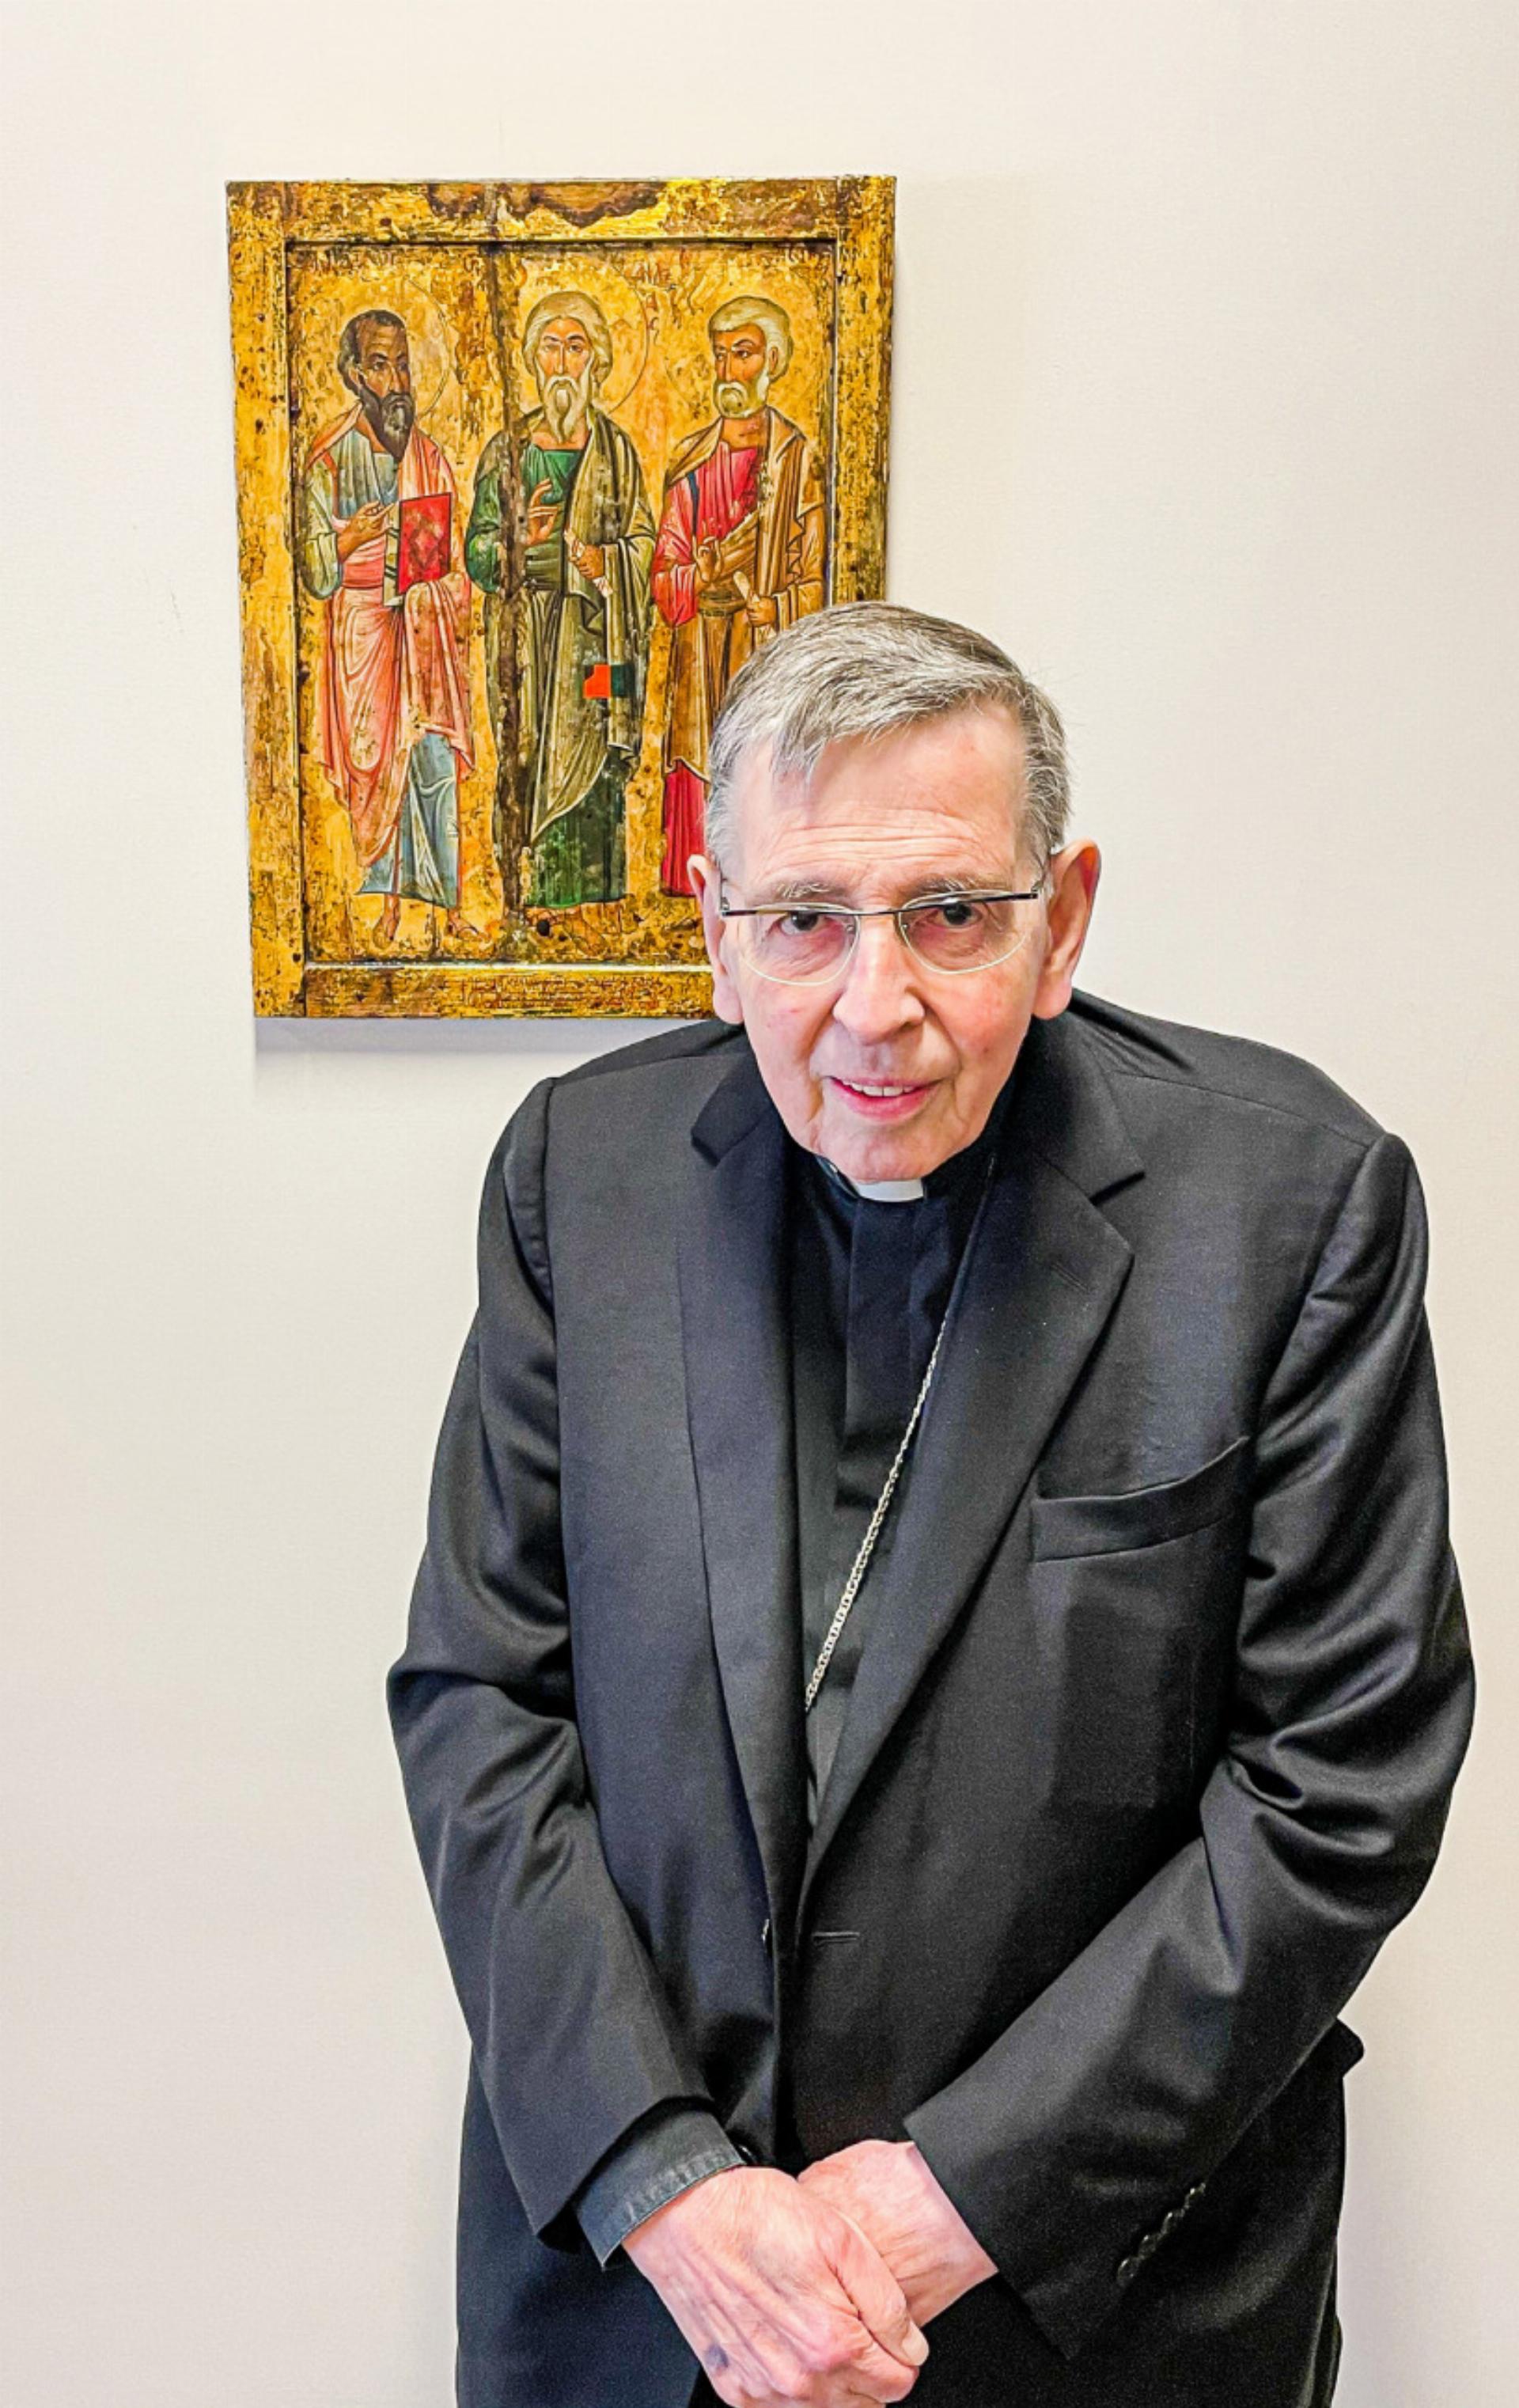 Ist besorgt über den Zustand des Christentums in Europa: Kurt Kardinal Koch in Rom. Bild Thomas Immoos